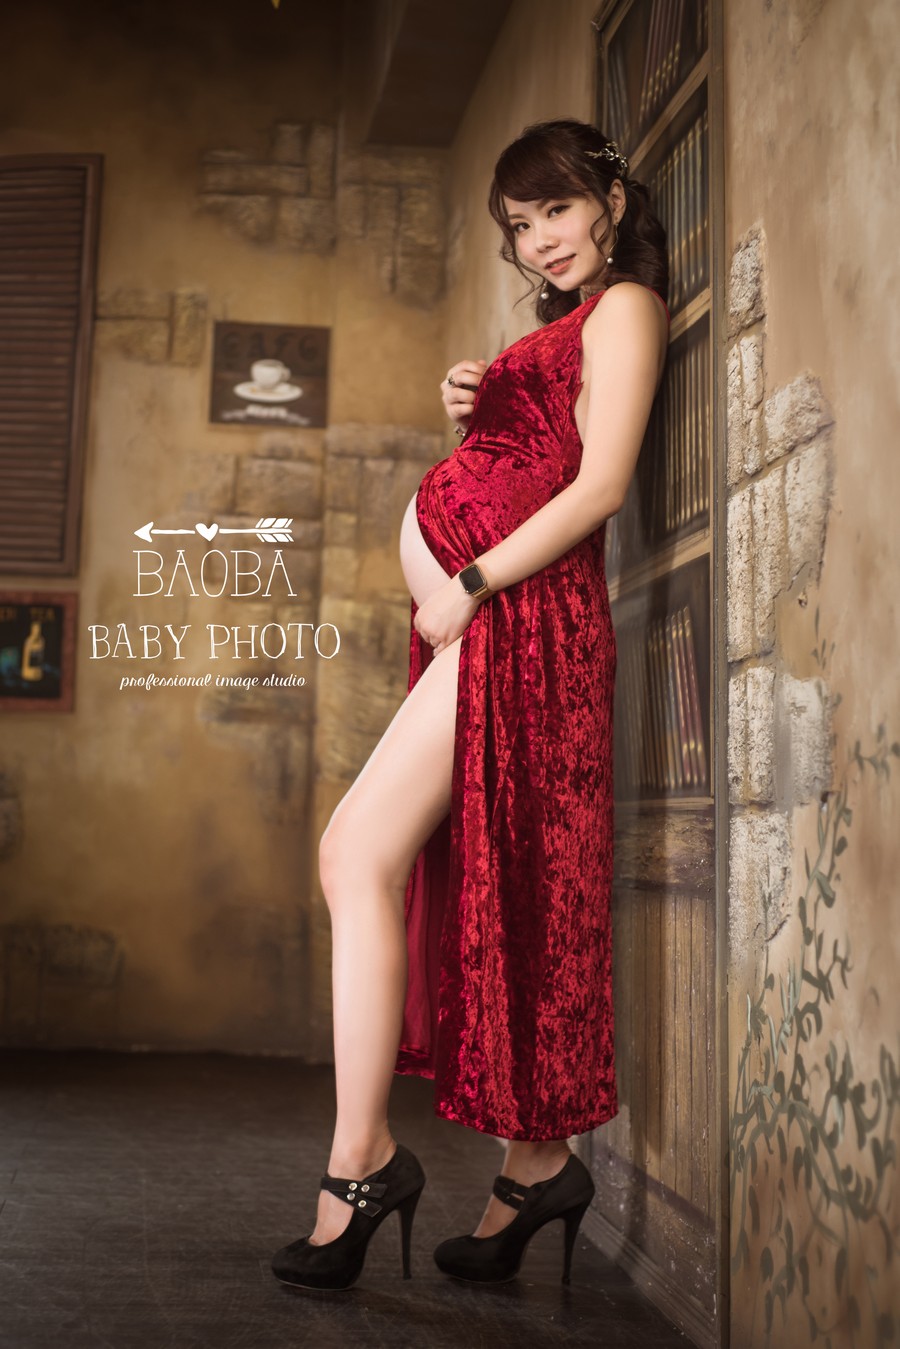 孕婦寫真,孕婦照,拍孕婦照,孕婦攝影,孕婦裝,孕婦禮服